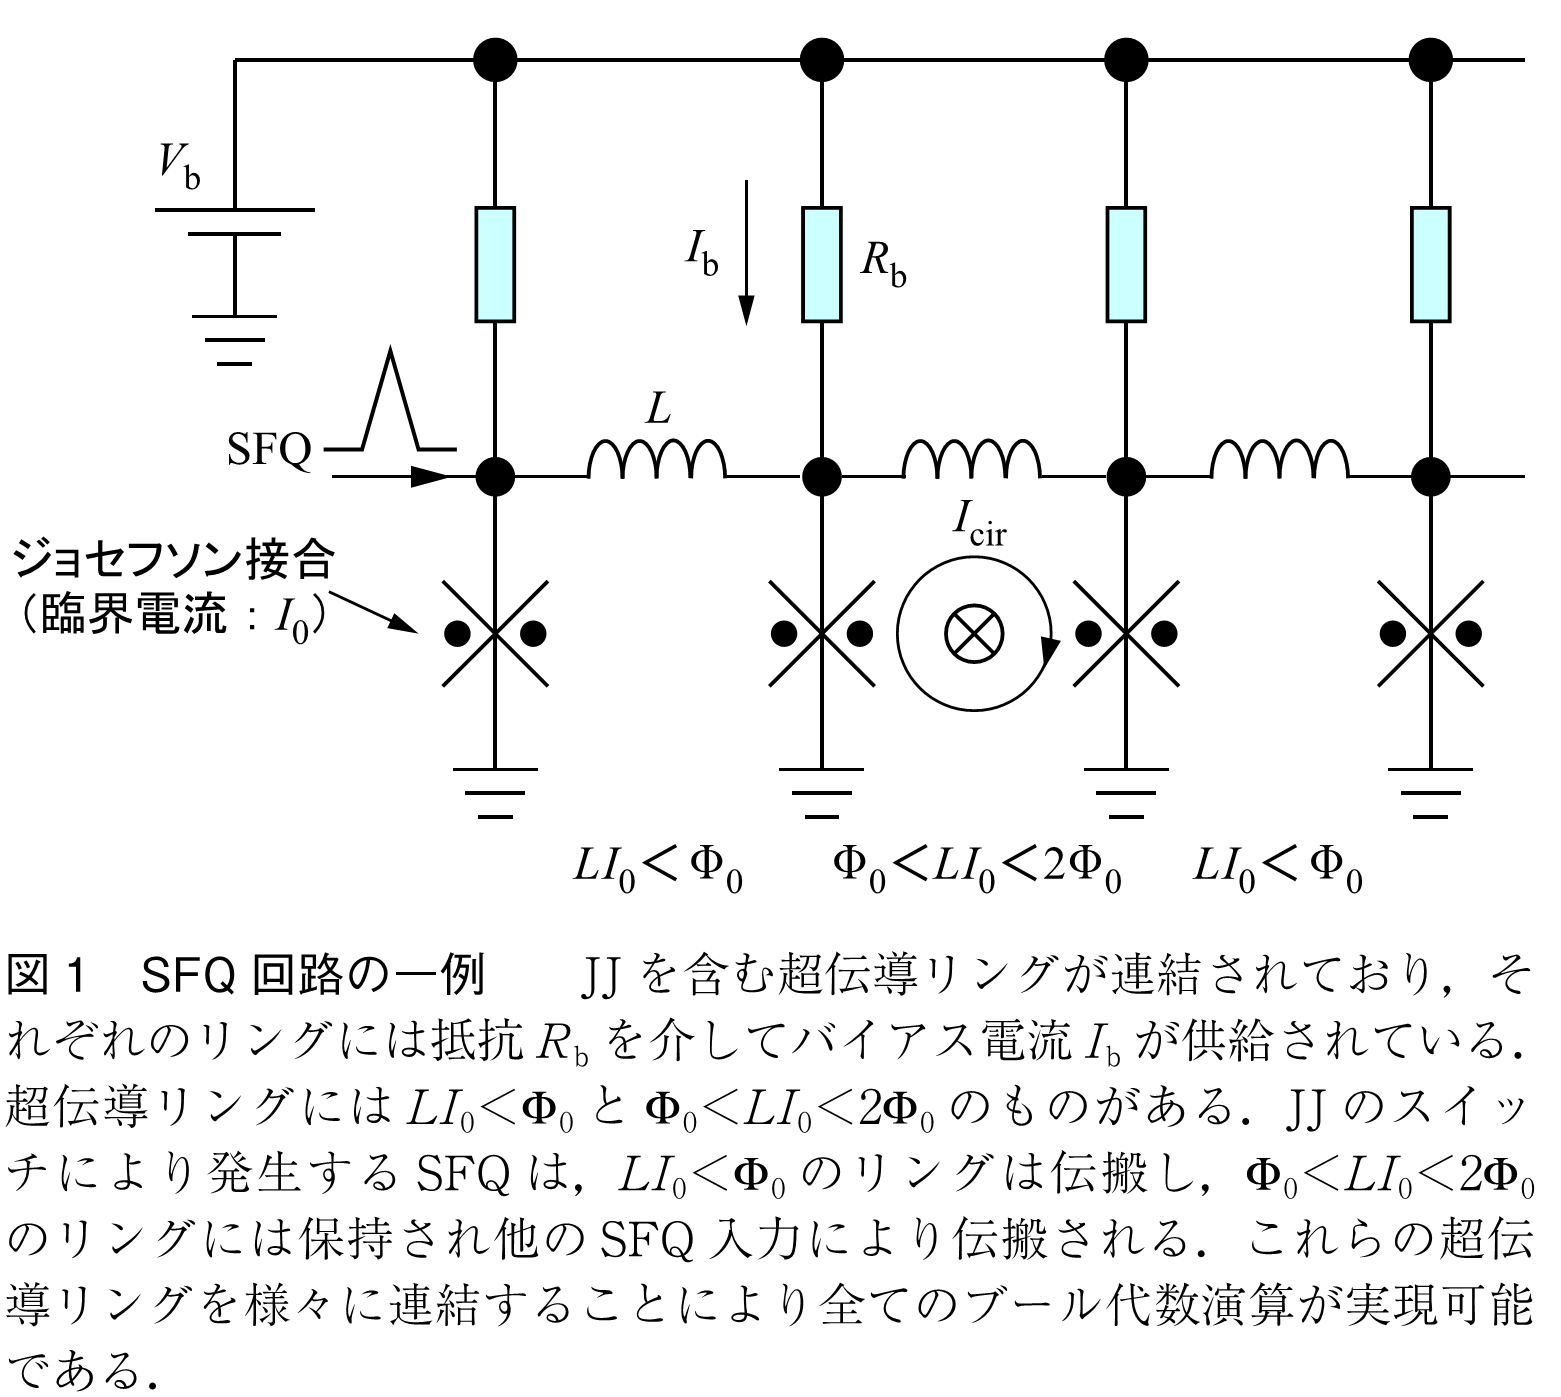 図1　SFQ回路の一例　　JJ を含む超伝導リングが連結されており，それぞれのリングには抵抗Rb を介してバイアス電流Ibが供給されている．超伝導リングにはLI0＜Φ0とΦ0＜LI0＜2Φ0のものがある．JJのスイッチにより発生するSFQは，LI0＜Φ0のリングは伝搬し，Φ0＜LI0＜2Φ0のリングには保持され他のSFQ 入力により伝搬される．これらの超伝導リングを様々に連結することにより全てのブール代数演算が実現可能である．